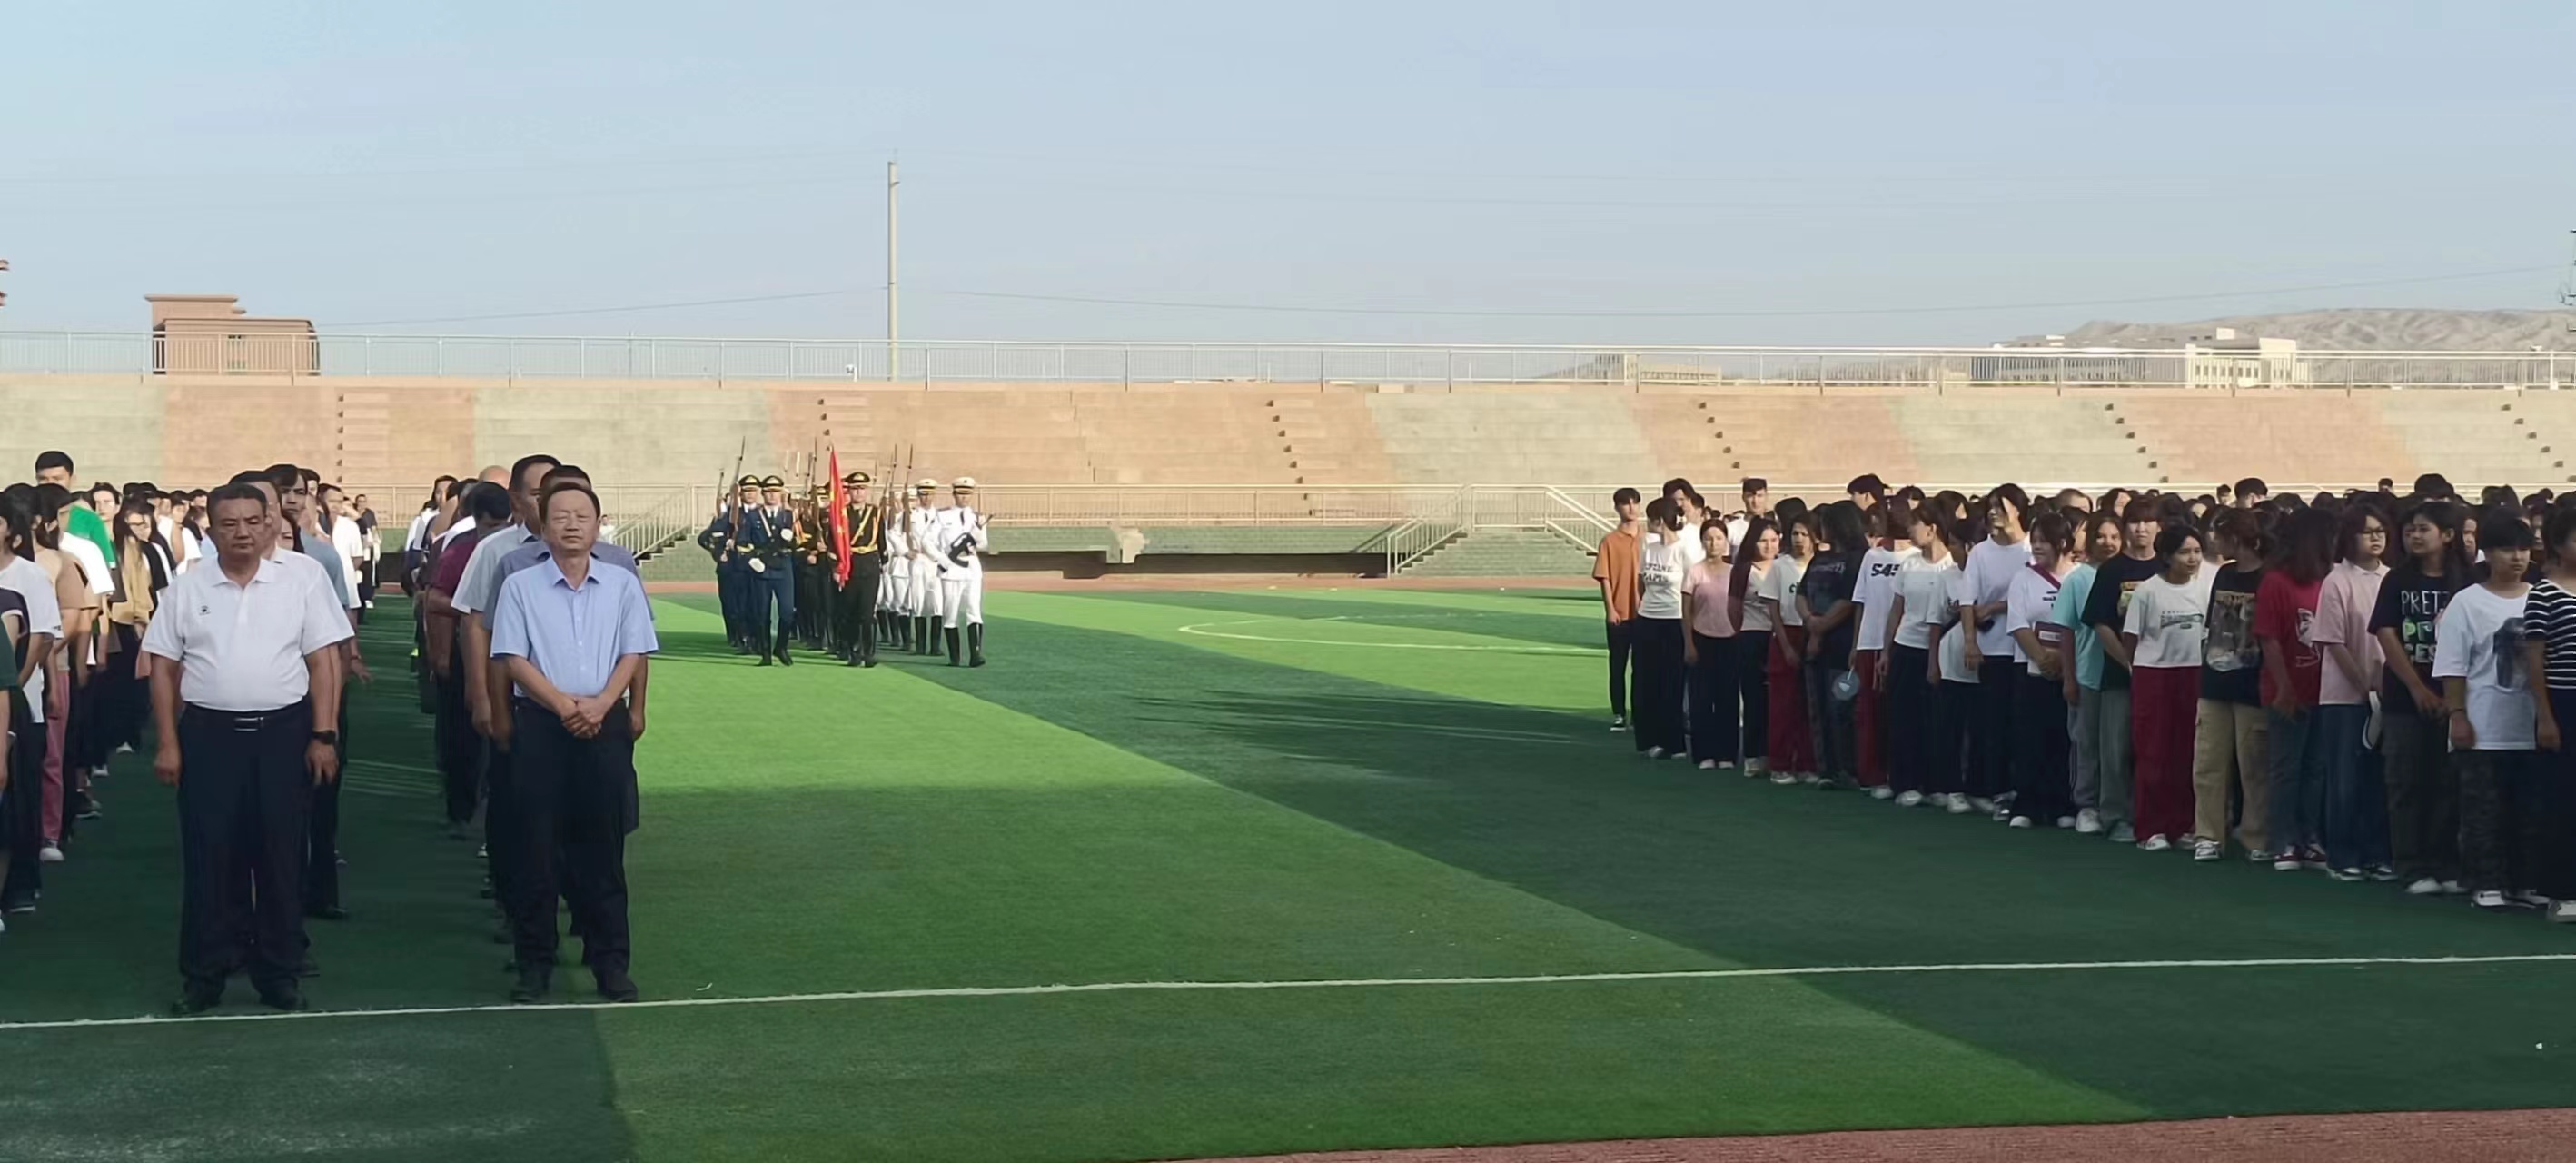 吐鲁番职业技术学院举行新学期升国旗仪式暨新生军训动员大会